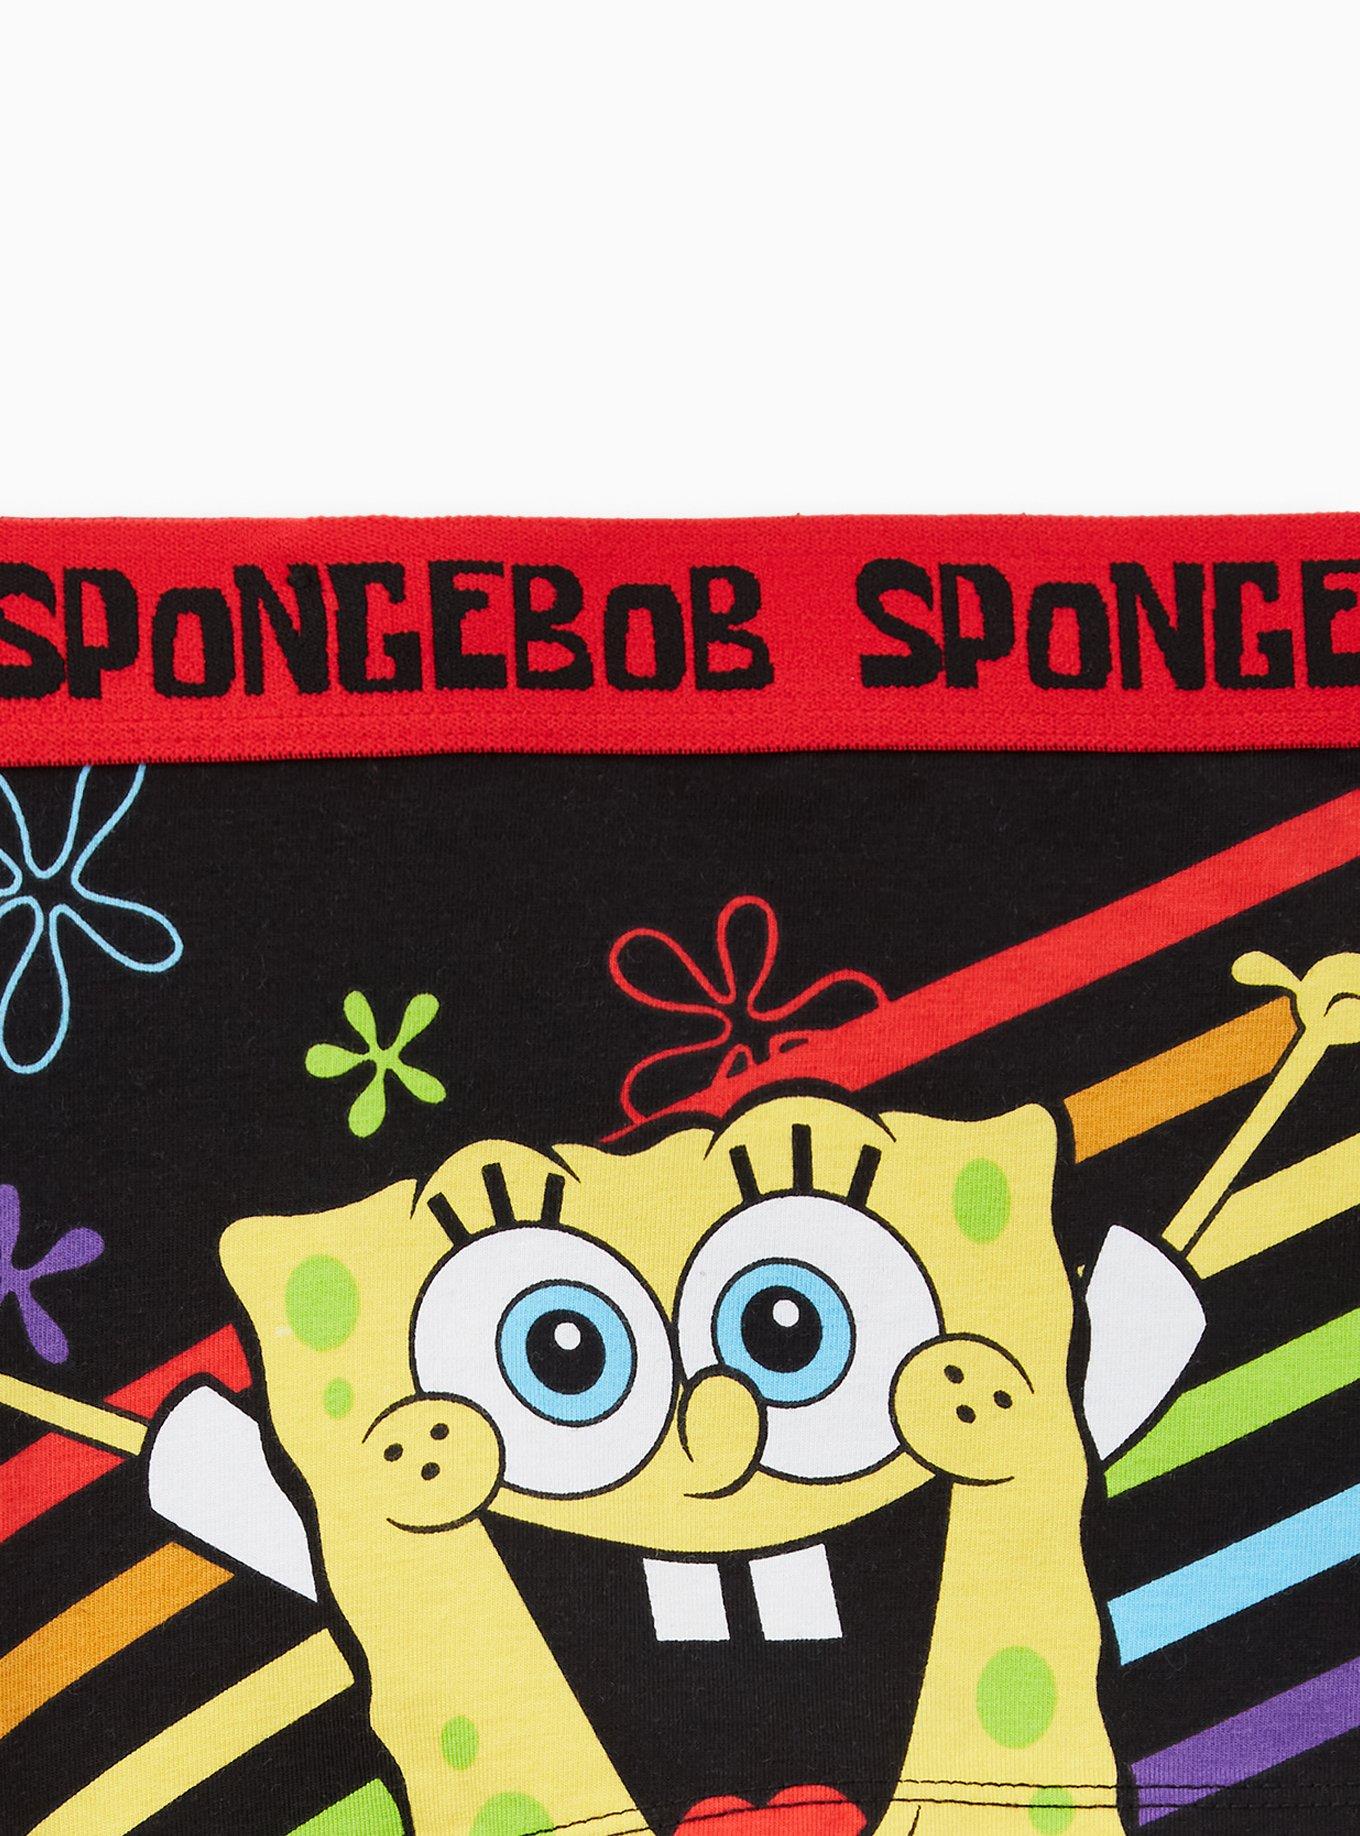 Torrid Boyshort Panties Underwear Nickelodeon SpongeBob Patrick Plus Sz 3  22 24